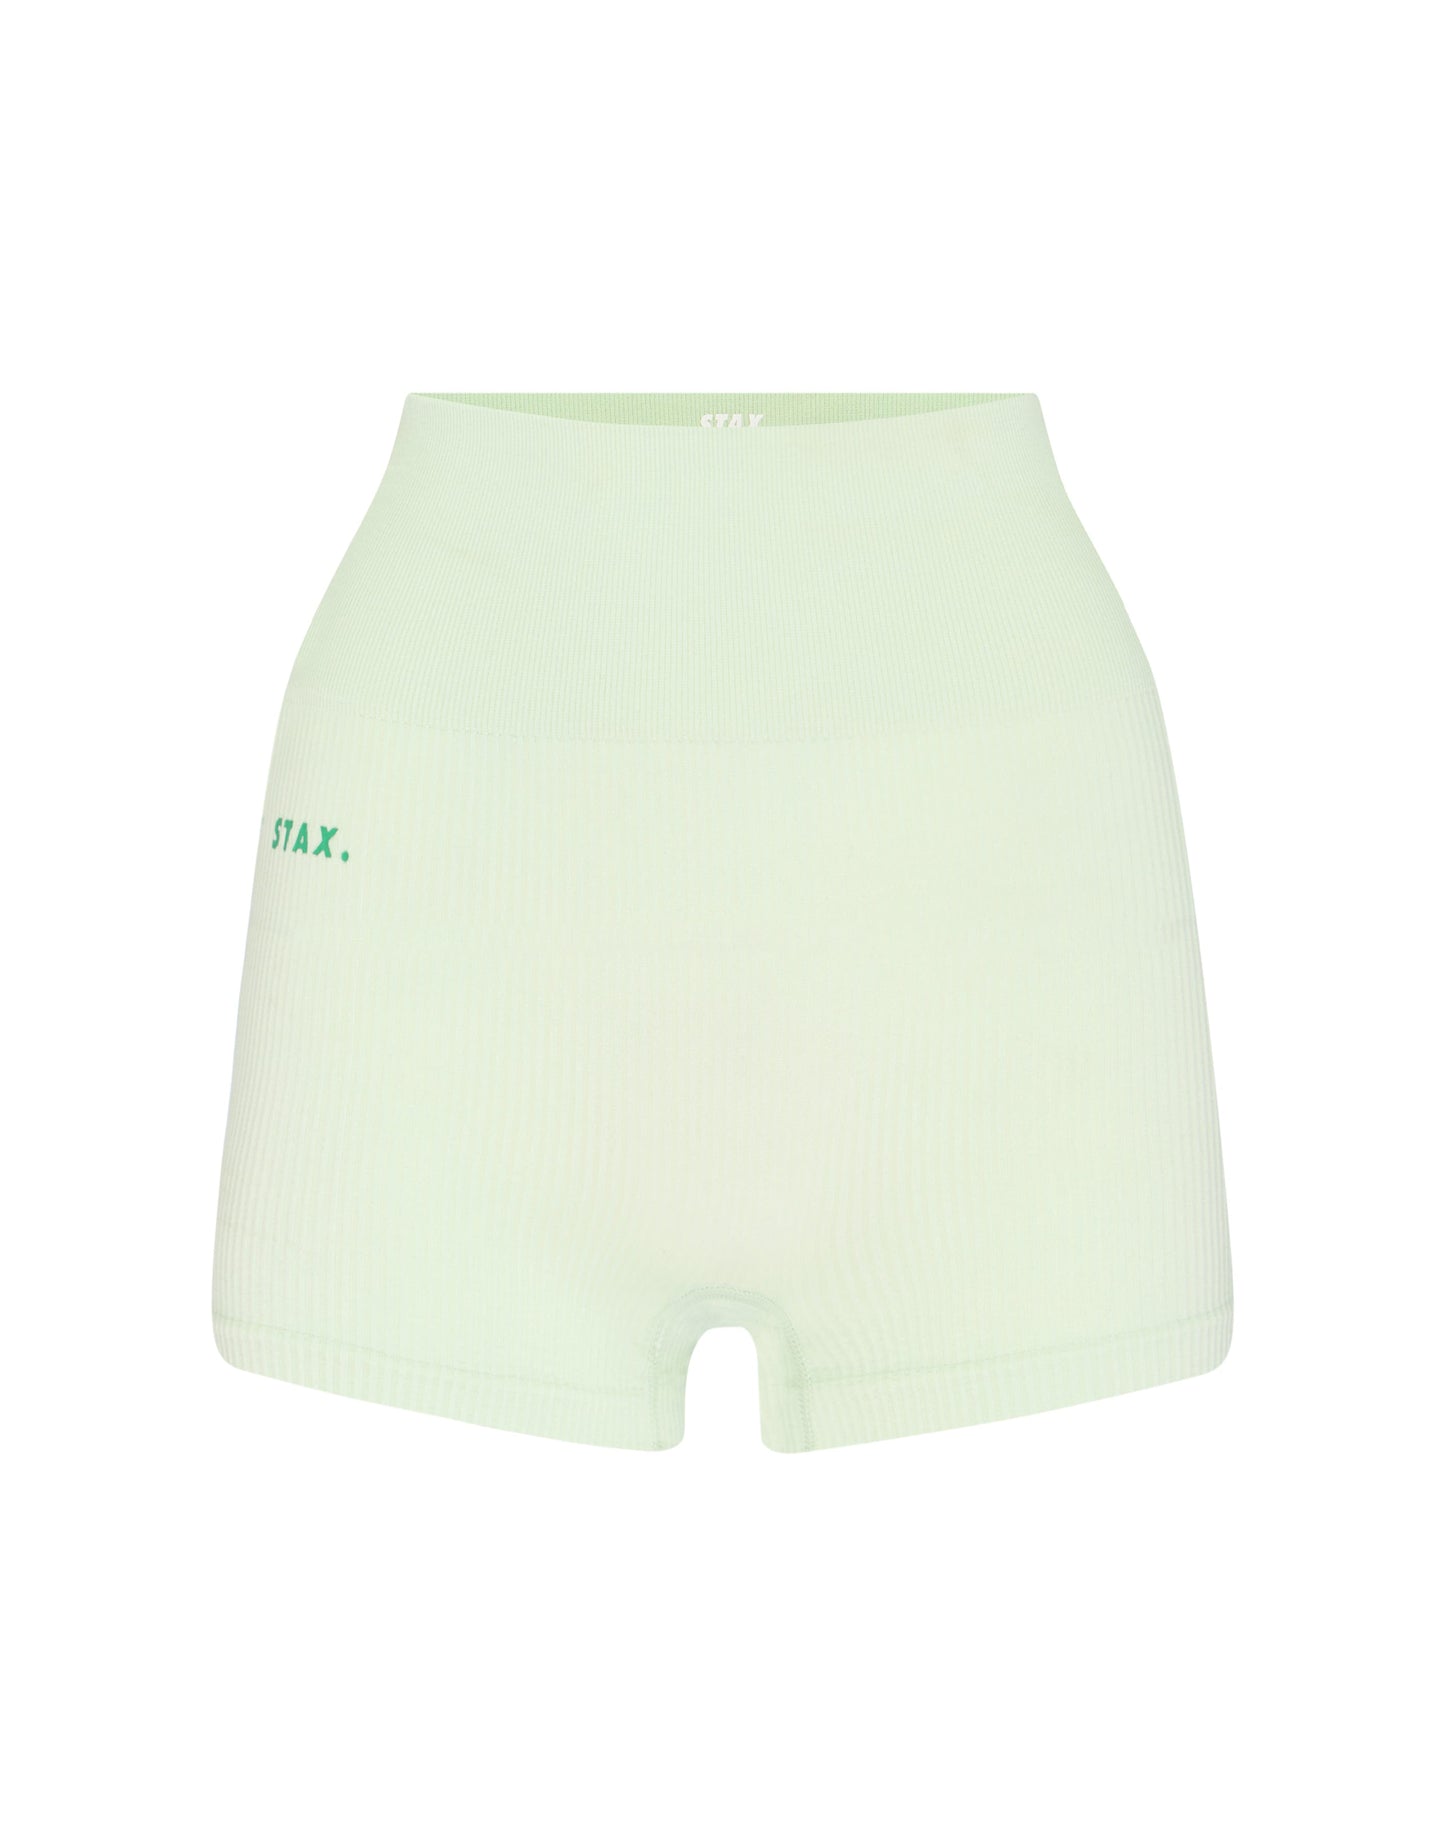 STAX. Premium Seamless V5 Mini Lounge Shorts - Aurora (Sage)